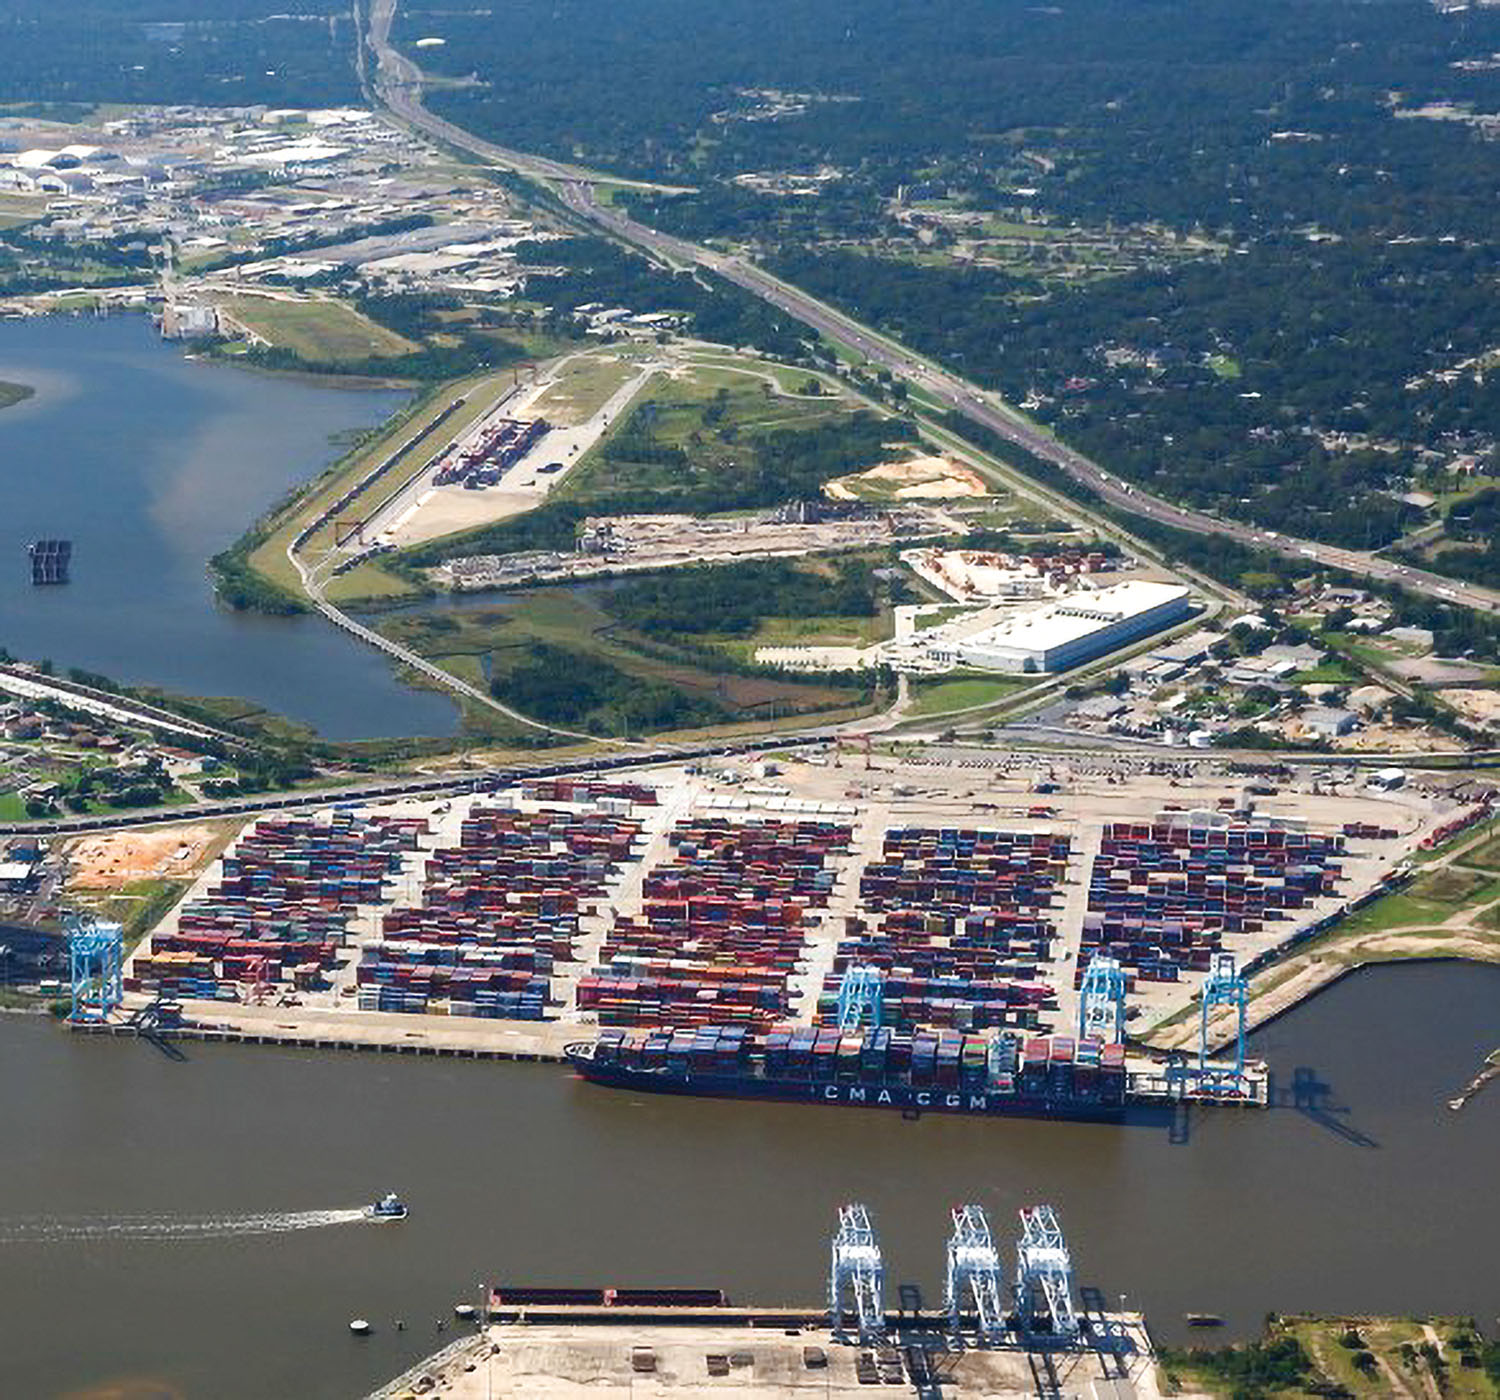 Port of Mobile’s intermodal container complex.